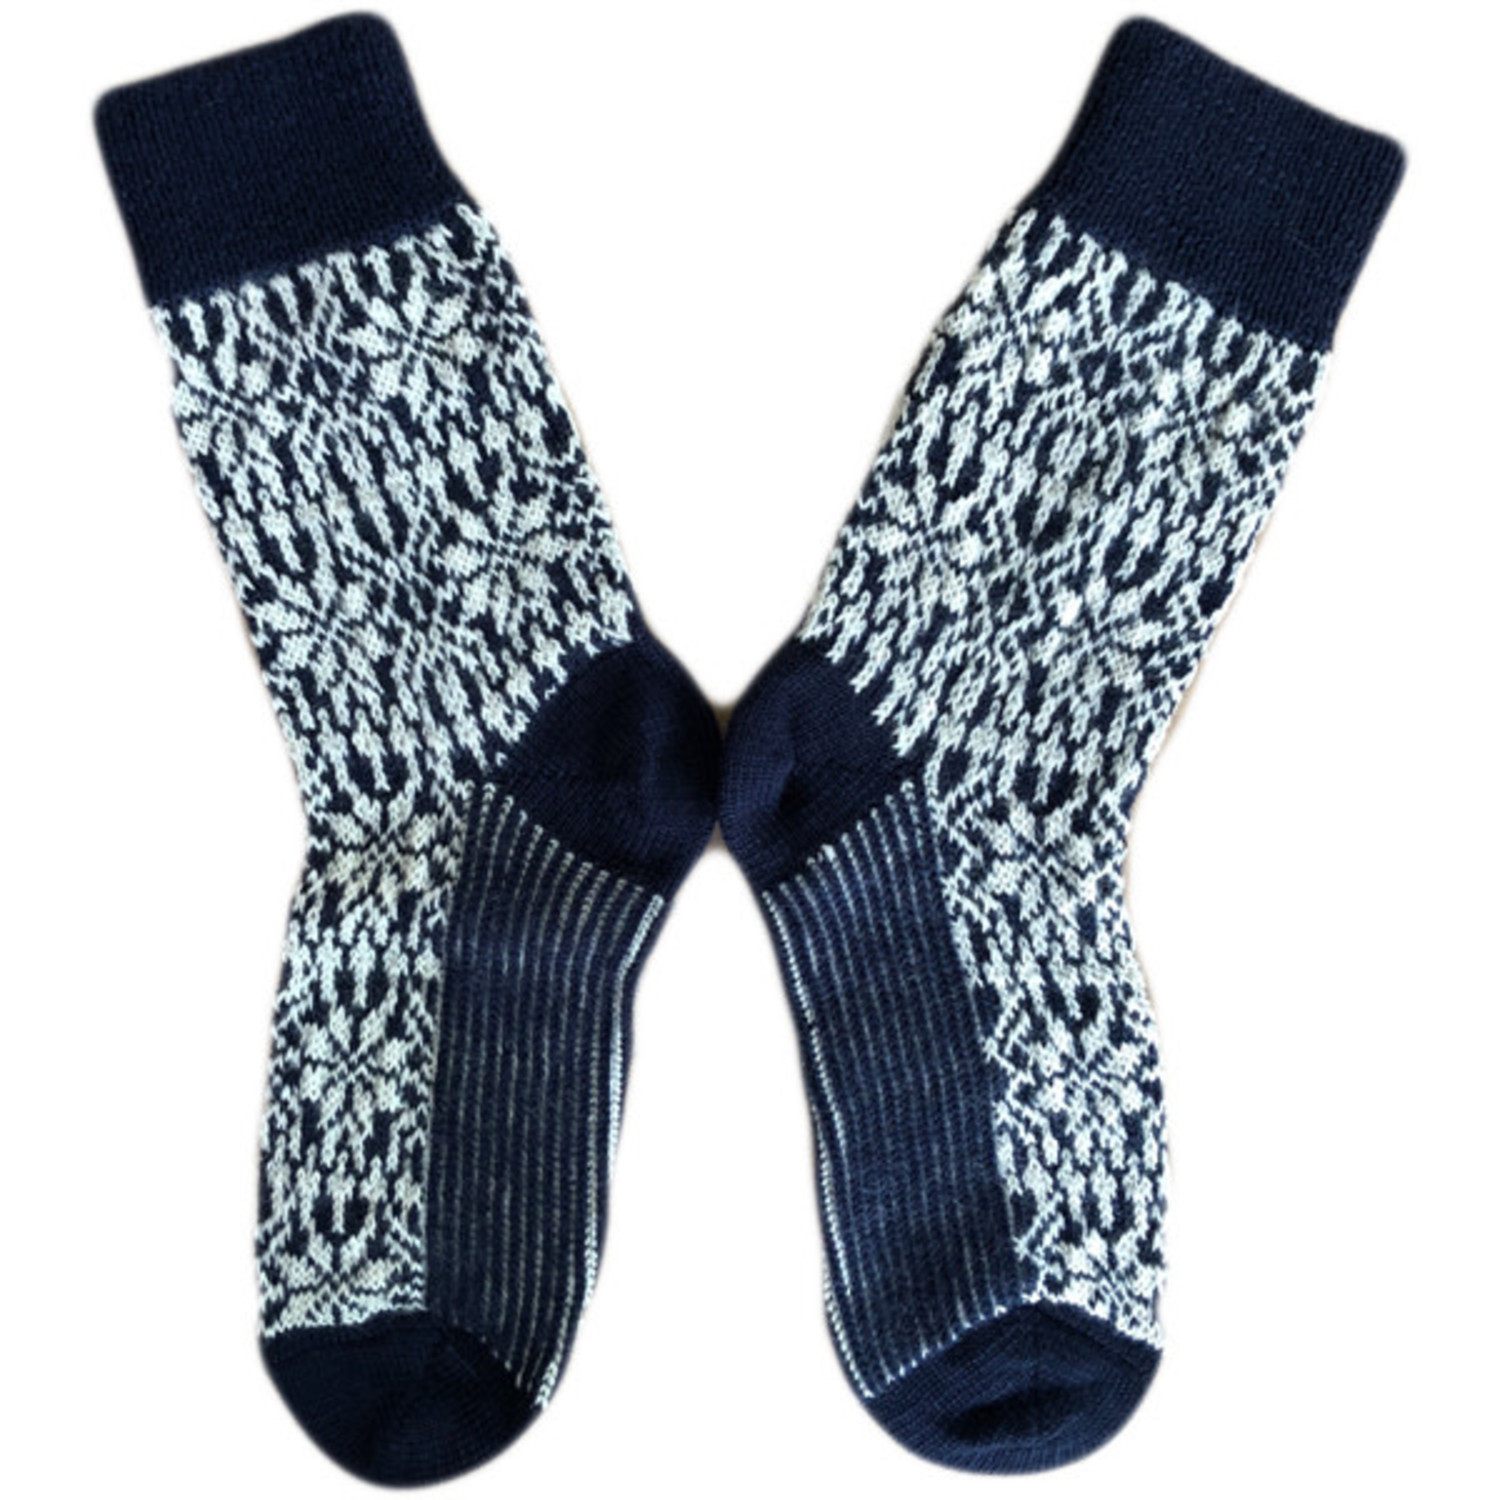 sokken Ploeg uitslag Hirsch Natur Noorse wollen sokken * Donkerblauw wit 030 70*| Natur-el -  Natur-el